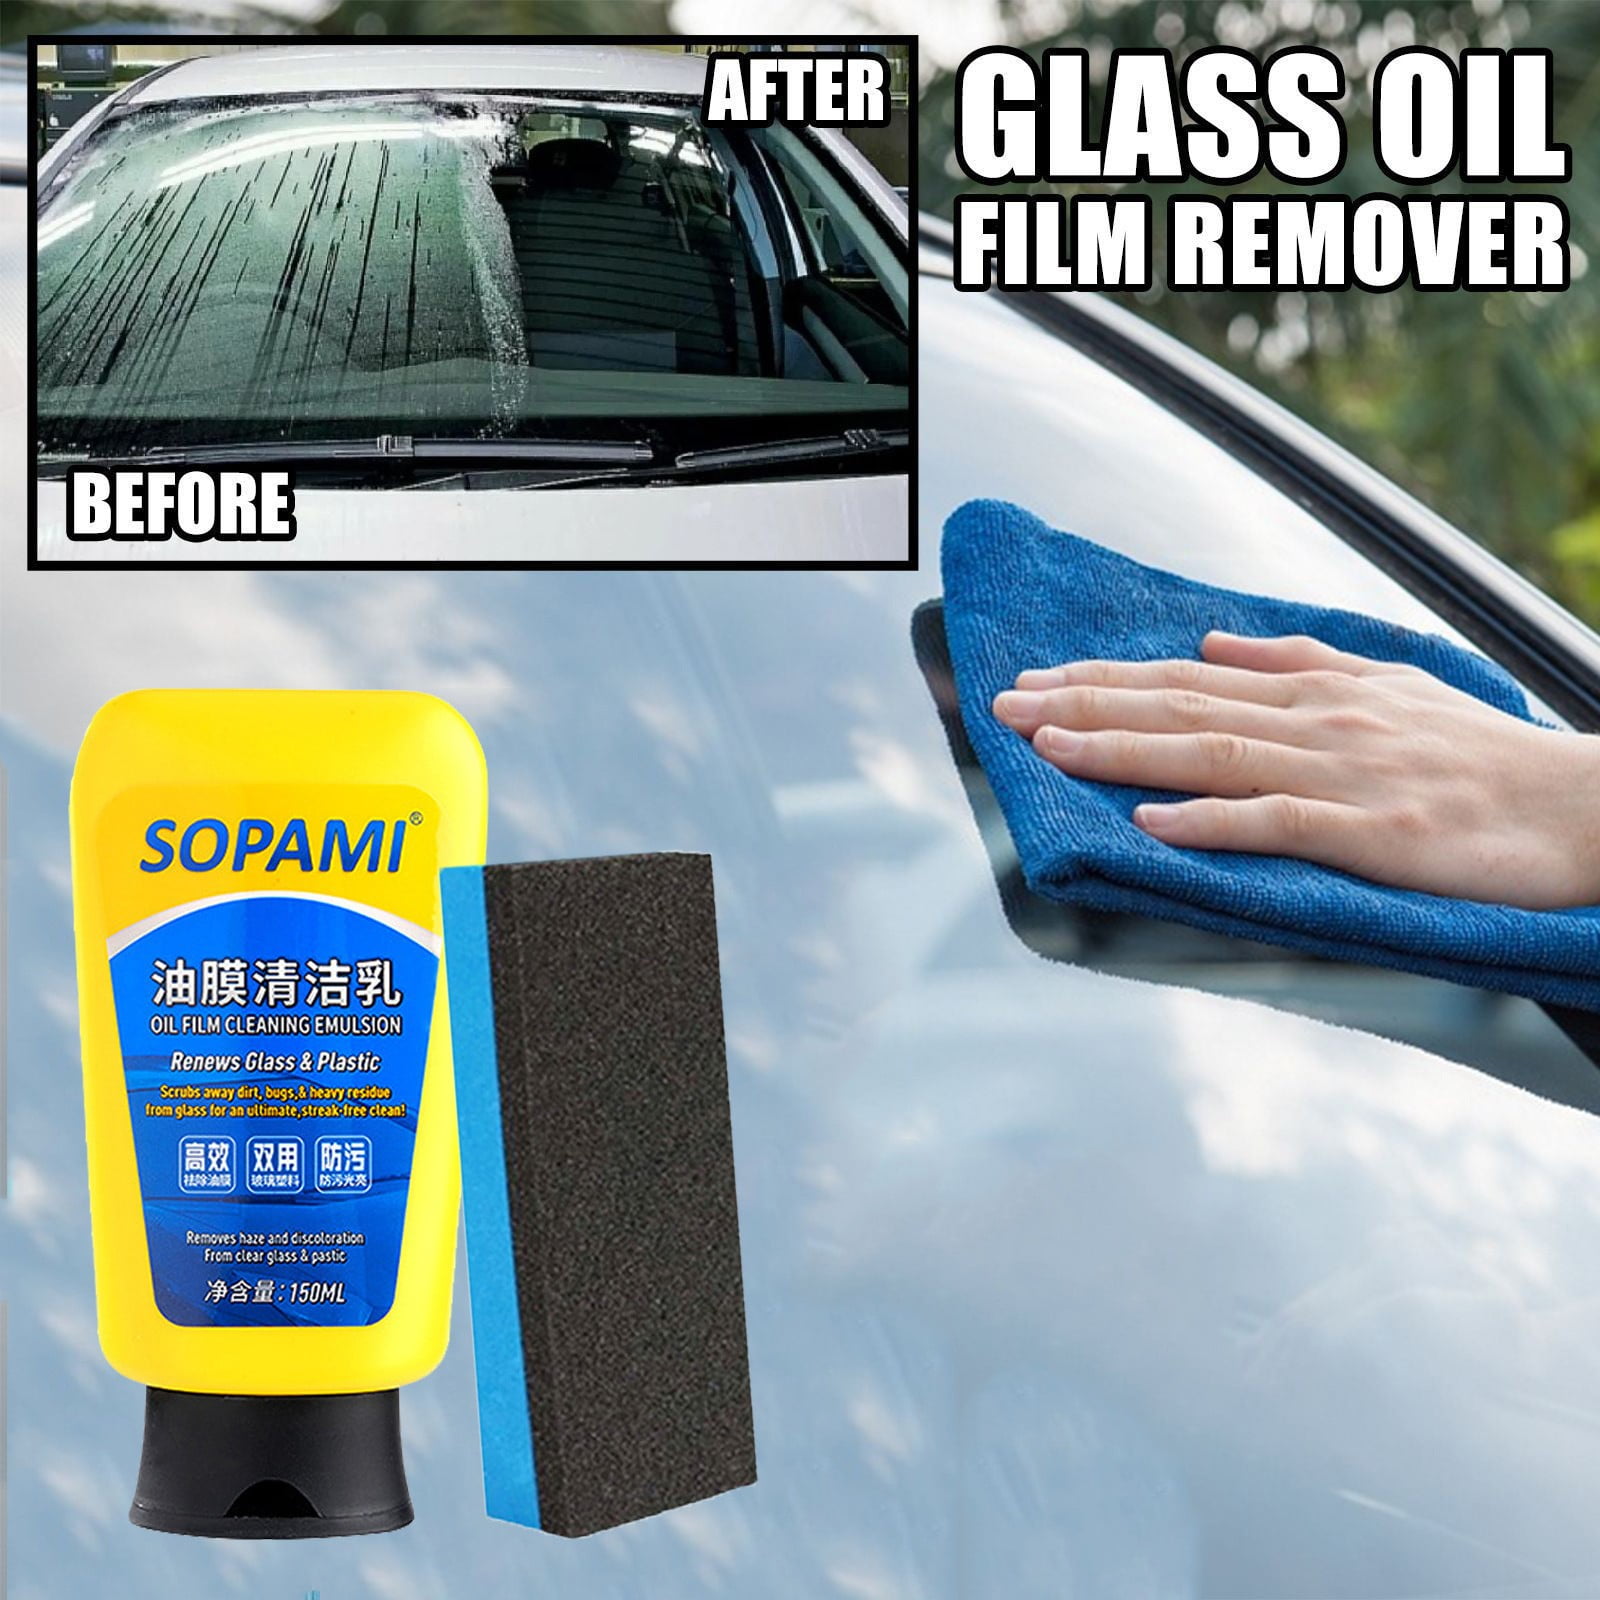 Sopami Oil Film Cleaning Emulsion,Sopami Oil Film Emulsion Glass  Cleaner,Sopami Car Coating Spray,Sopami Automotive Glass Oil Film  Remover,Quickly